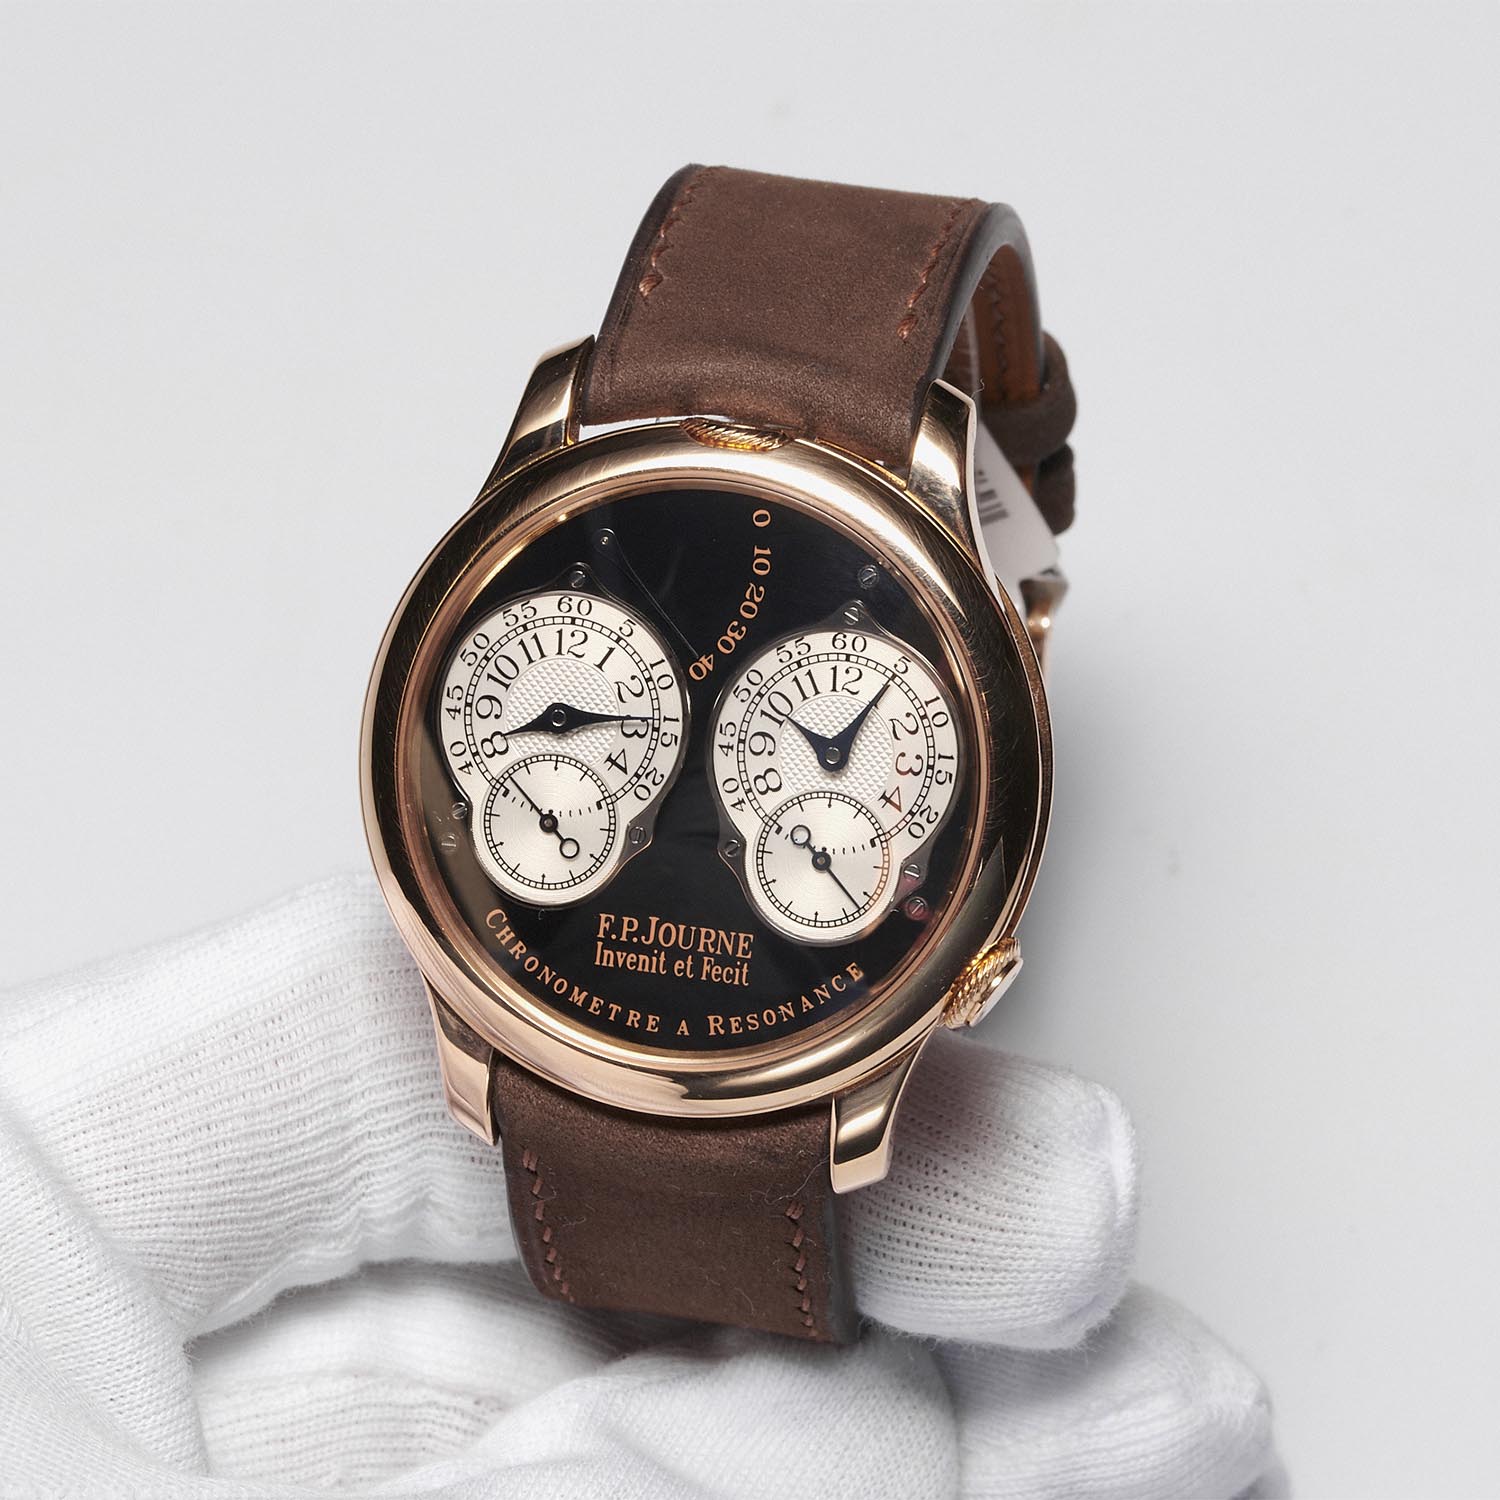 ineichen auction zurich la vie en rose - FP journe Chronometre resonance sincere watches